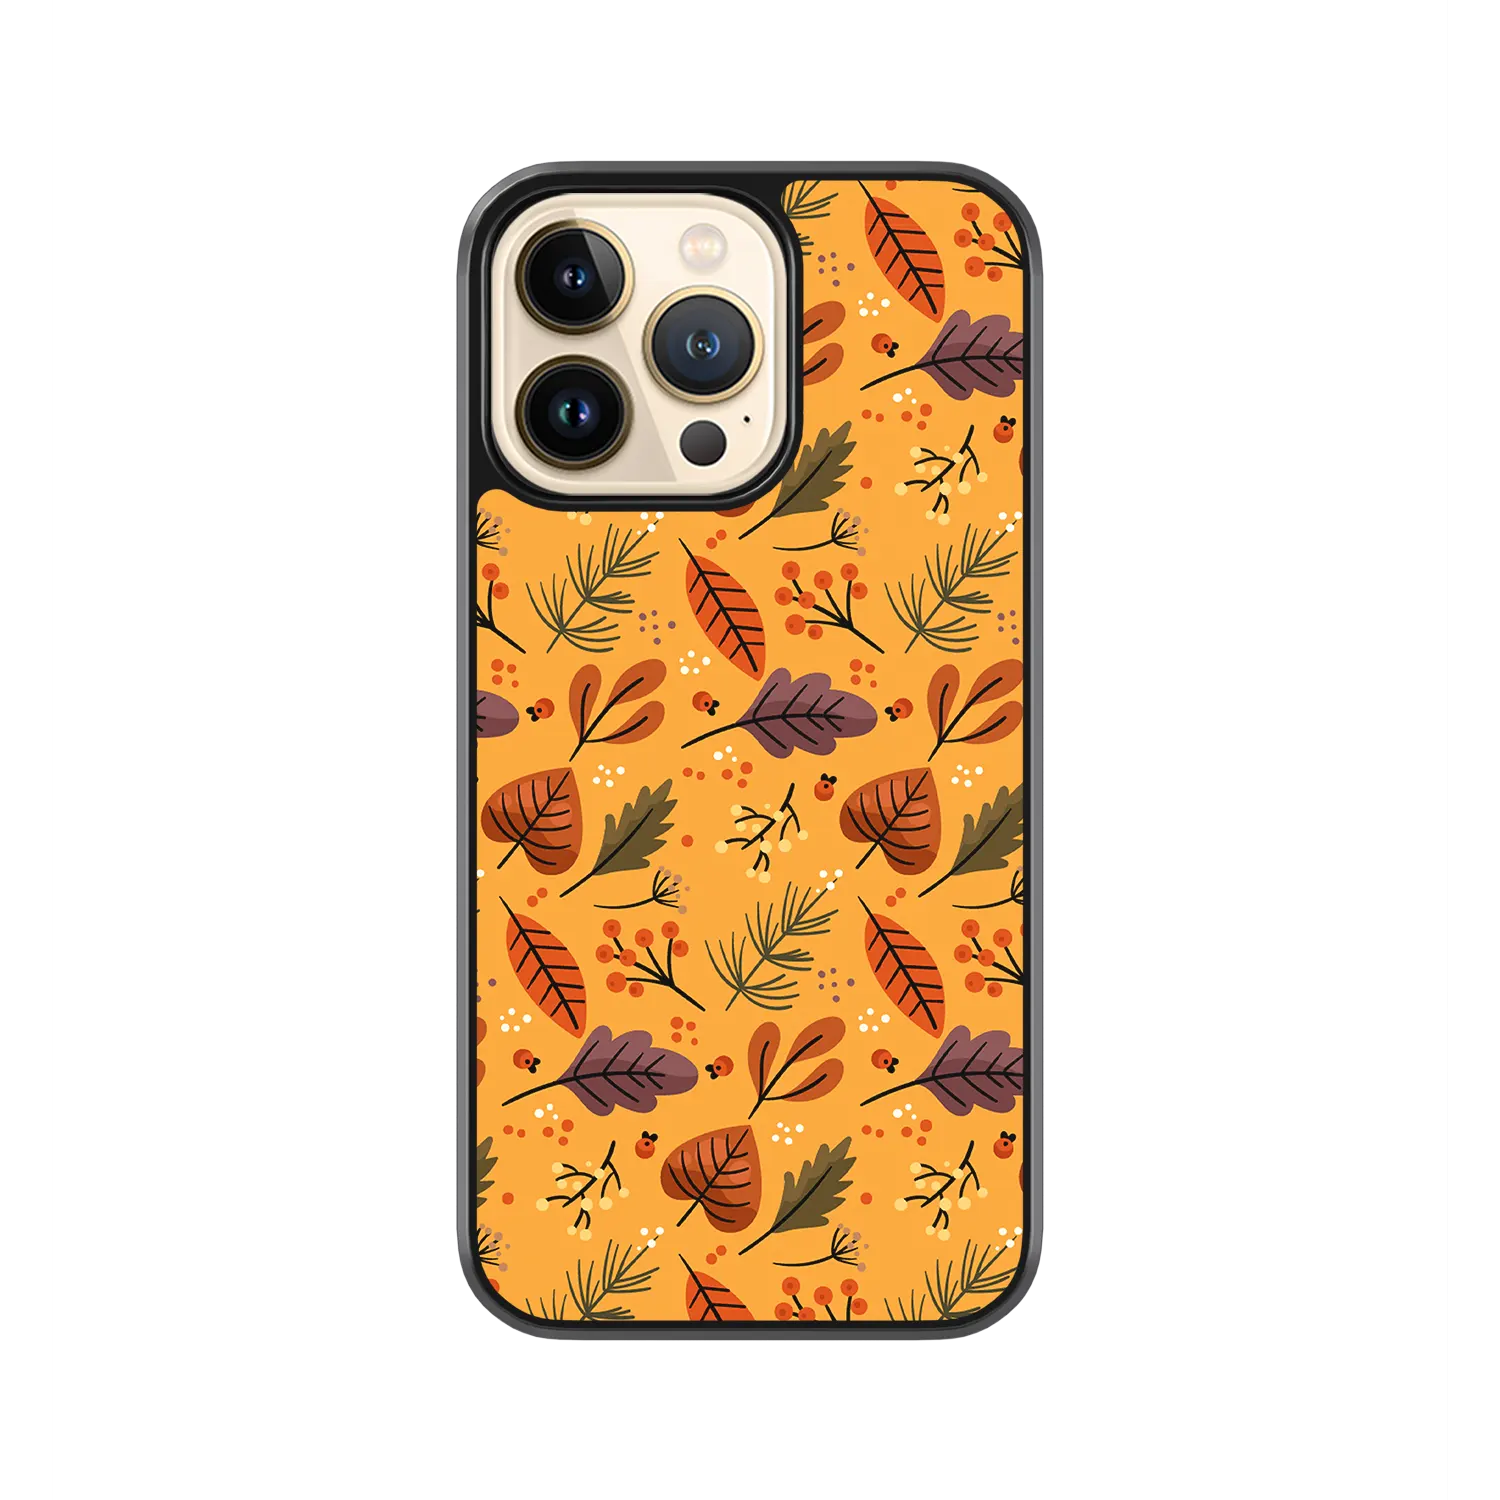 Autumn-Orange-iPhone-11-Pro-Case.webp